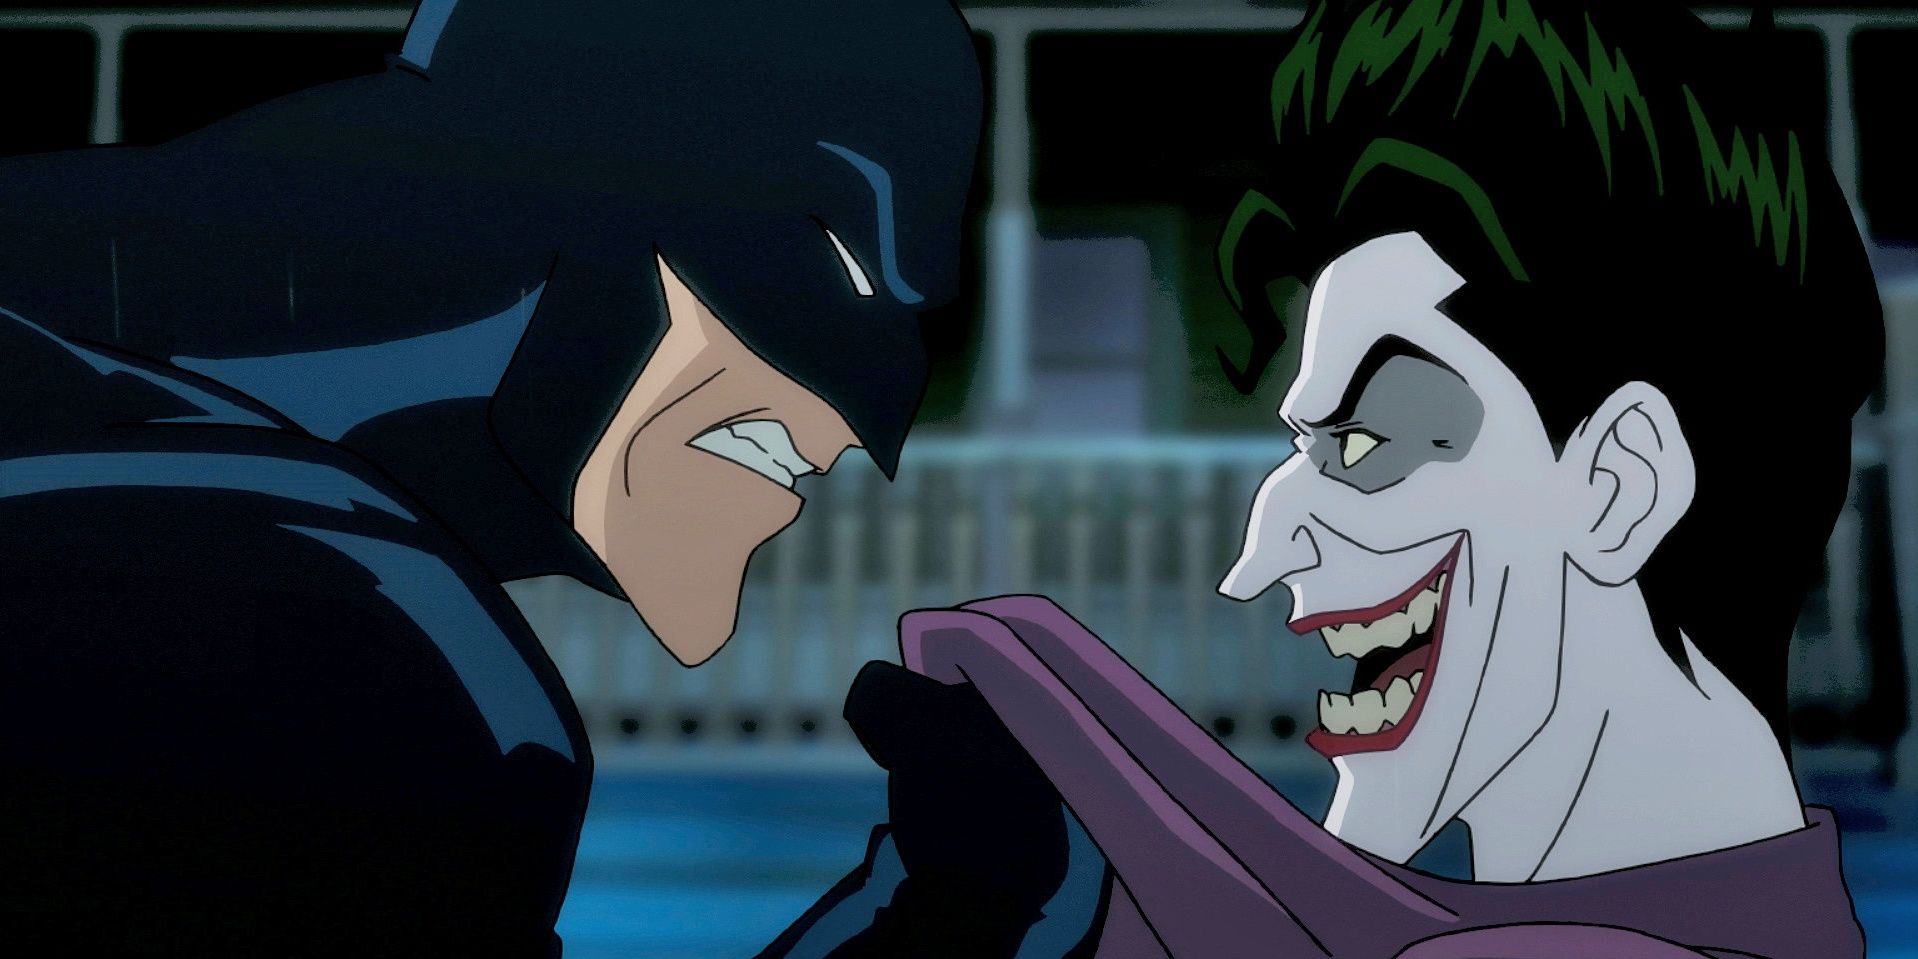 Batman and the Joker in The Killing Joke